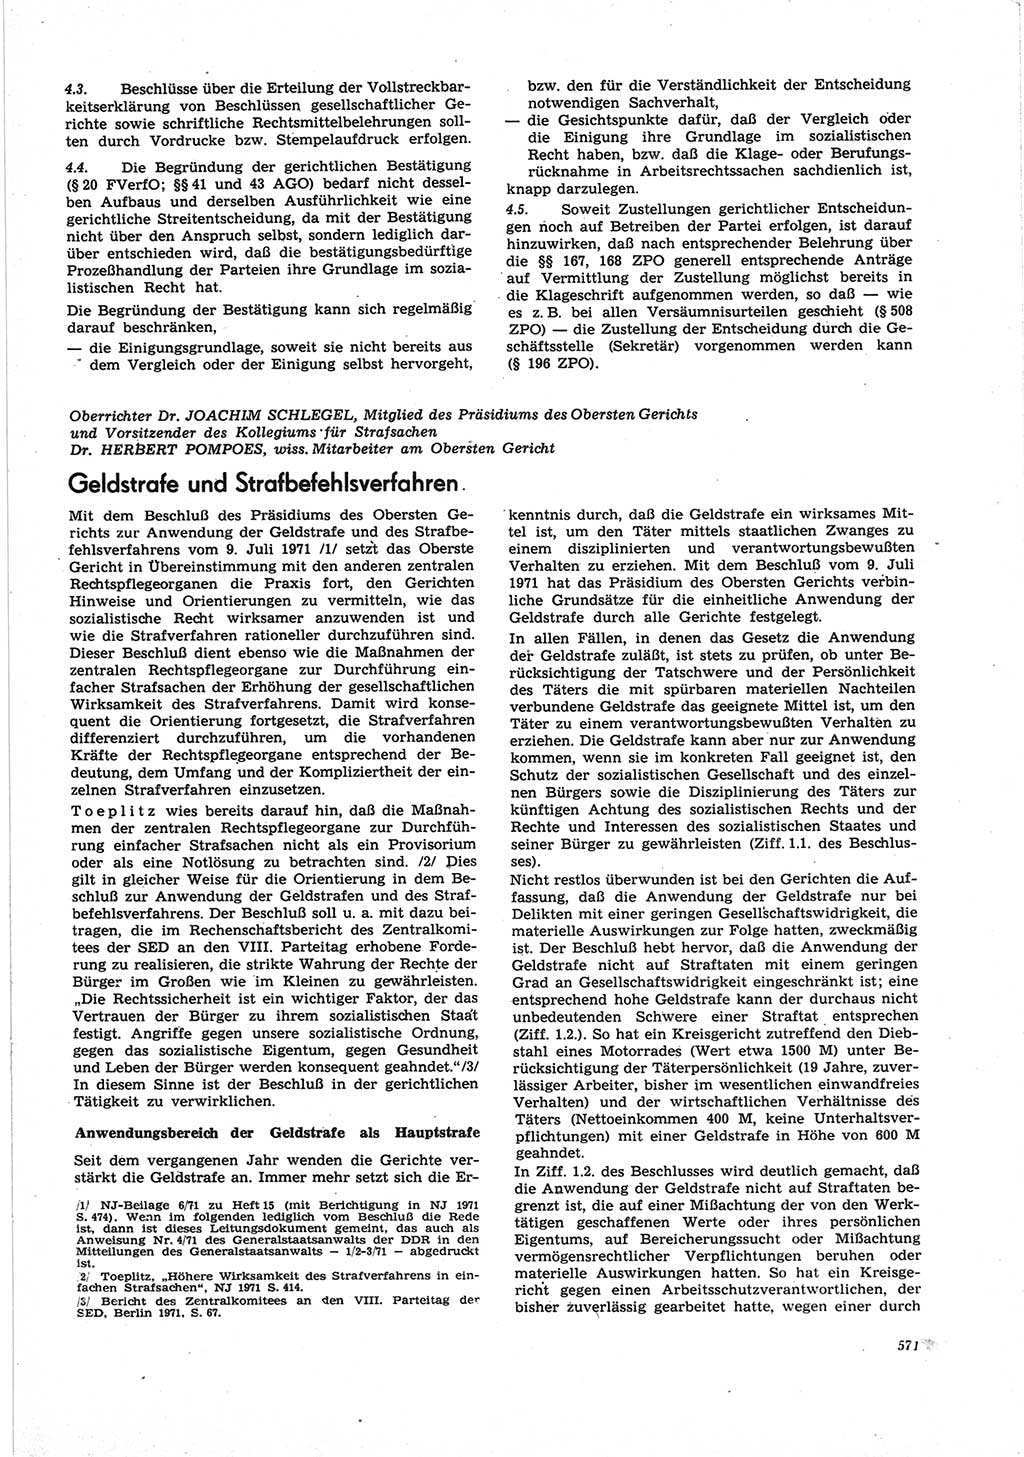 Neue Justiz (NJ), Zeitschrift für Recht und Rechtswissenschaft [Deutsche Demokratische Republik (DDR)], 25. Jahrgang 1971, Seite 571 (NJ DDR 1971, S. 571)